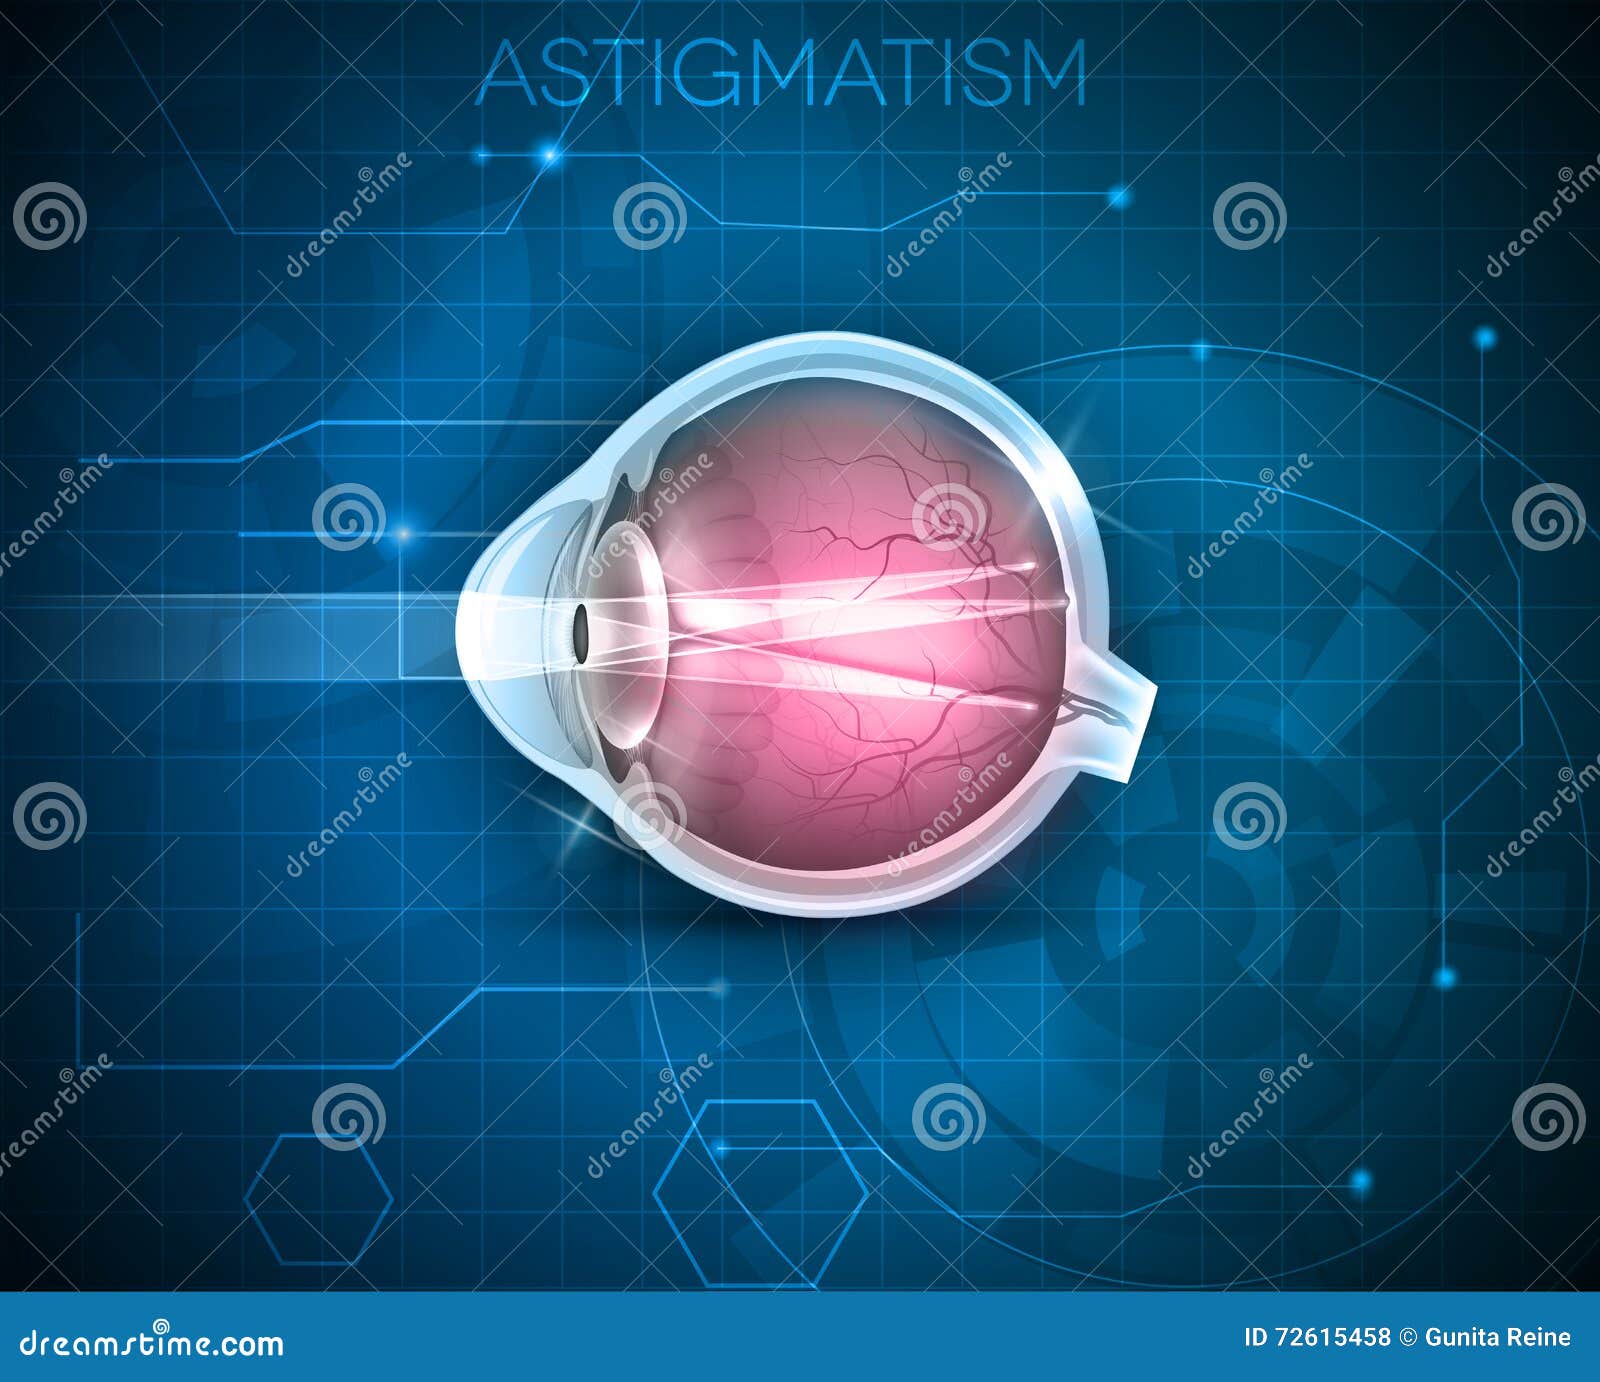 astigmatism la 100 de viziuni